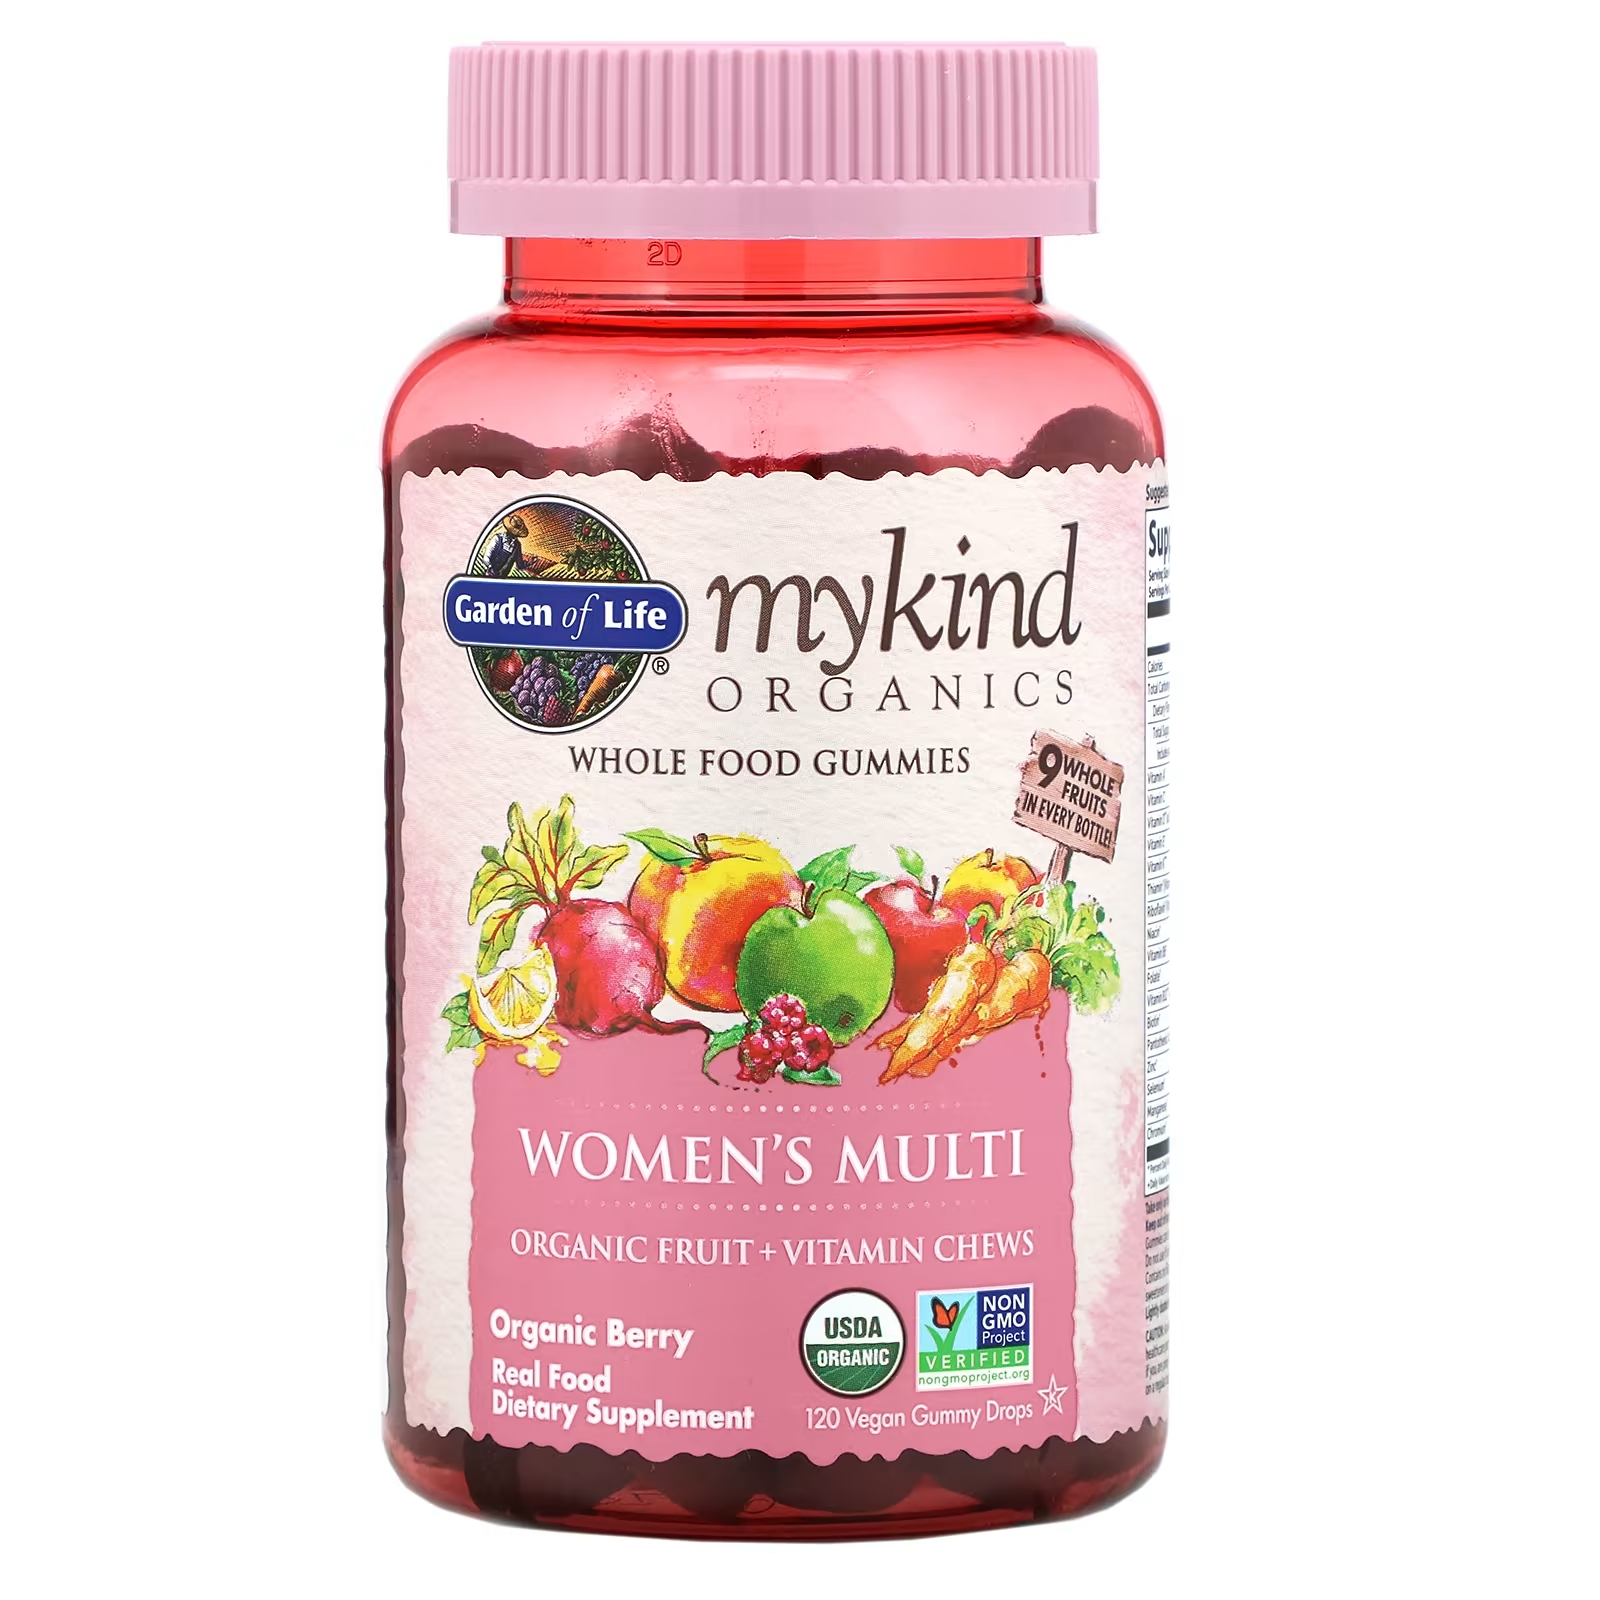 Мультивитамины для Женщин Garden of Life MyKind, ягоды, 120 жевательных таблеток garden of life mykind organics мультивитамины для женщин органические ягоды 120 веганских жевательных таблеток